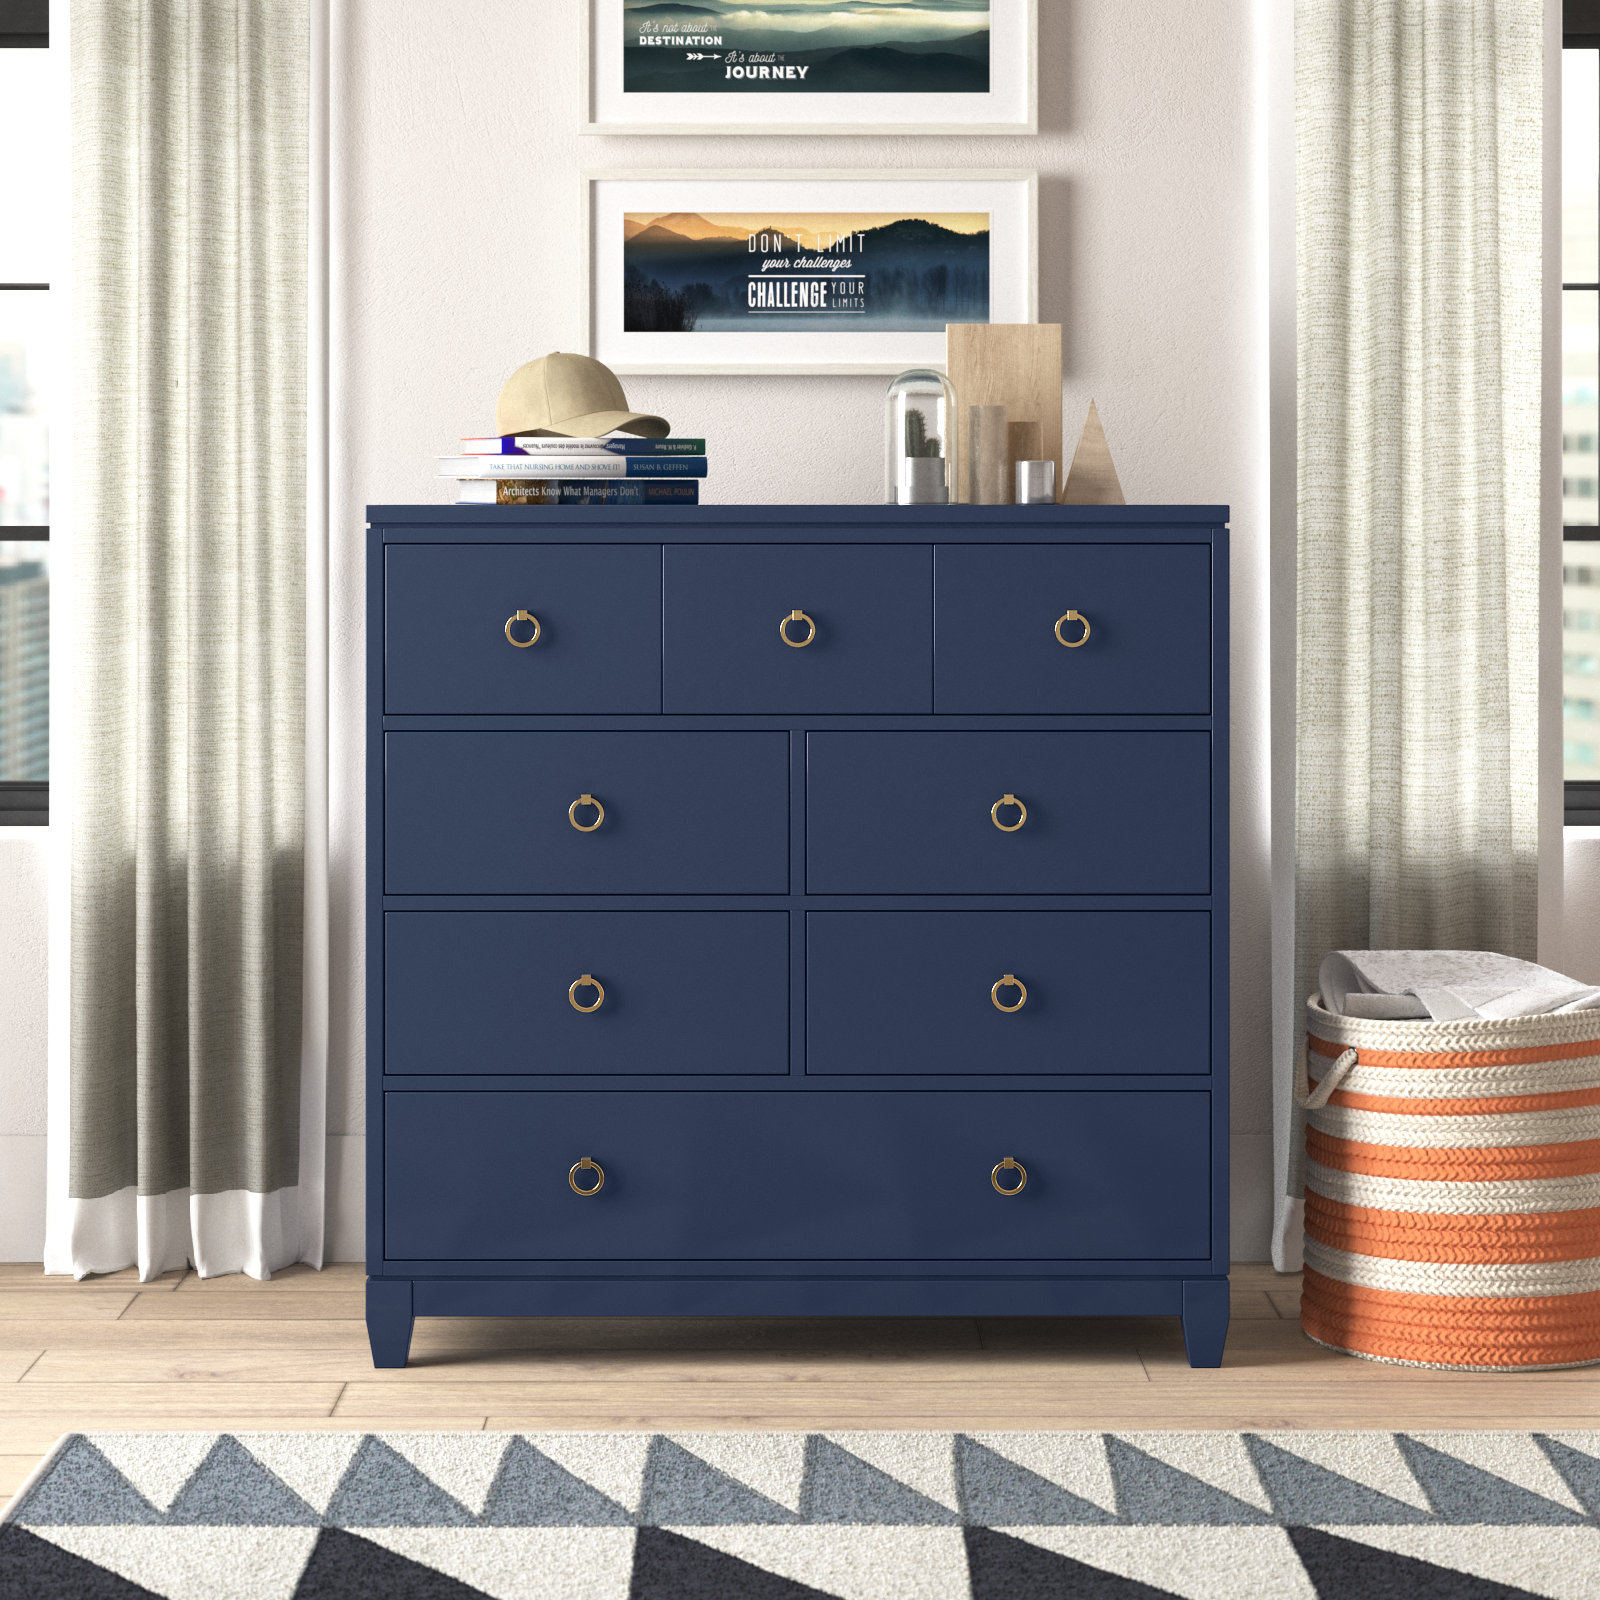 A Cedar Linen Closet Makeover - Shades of Blue Interiors